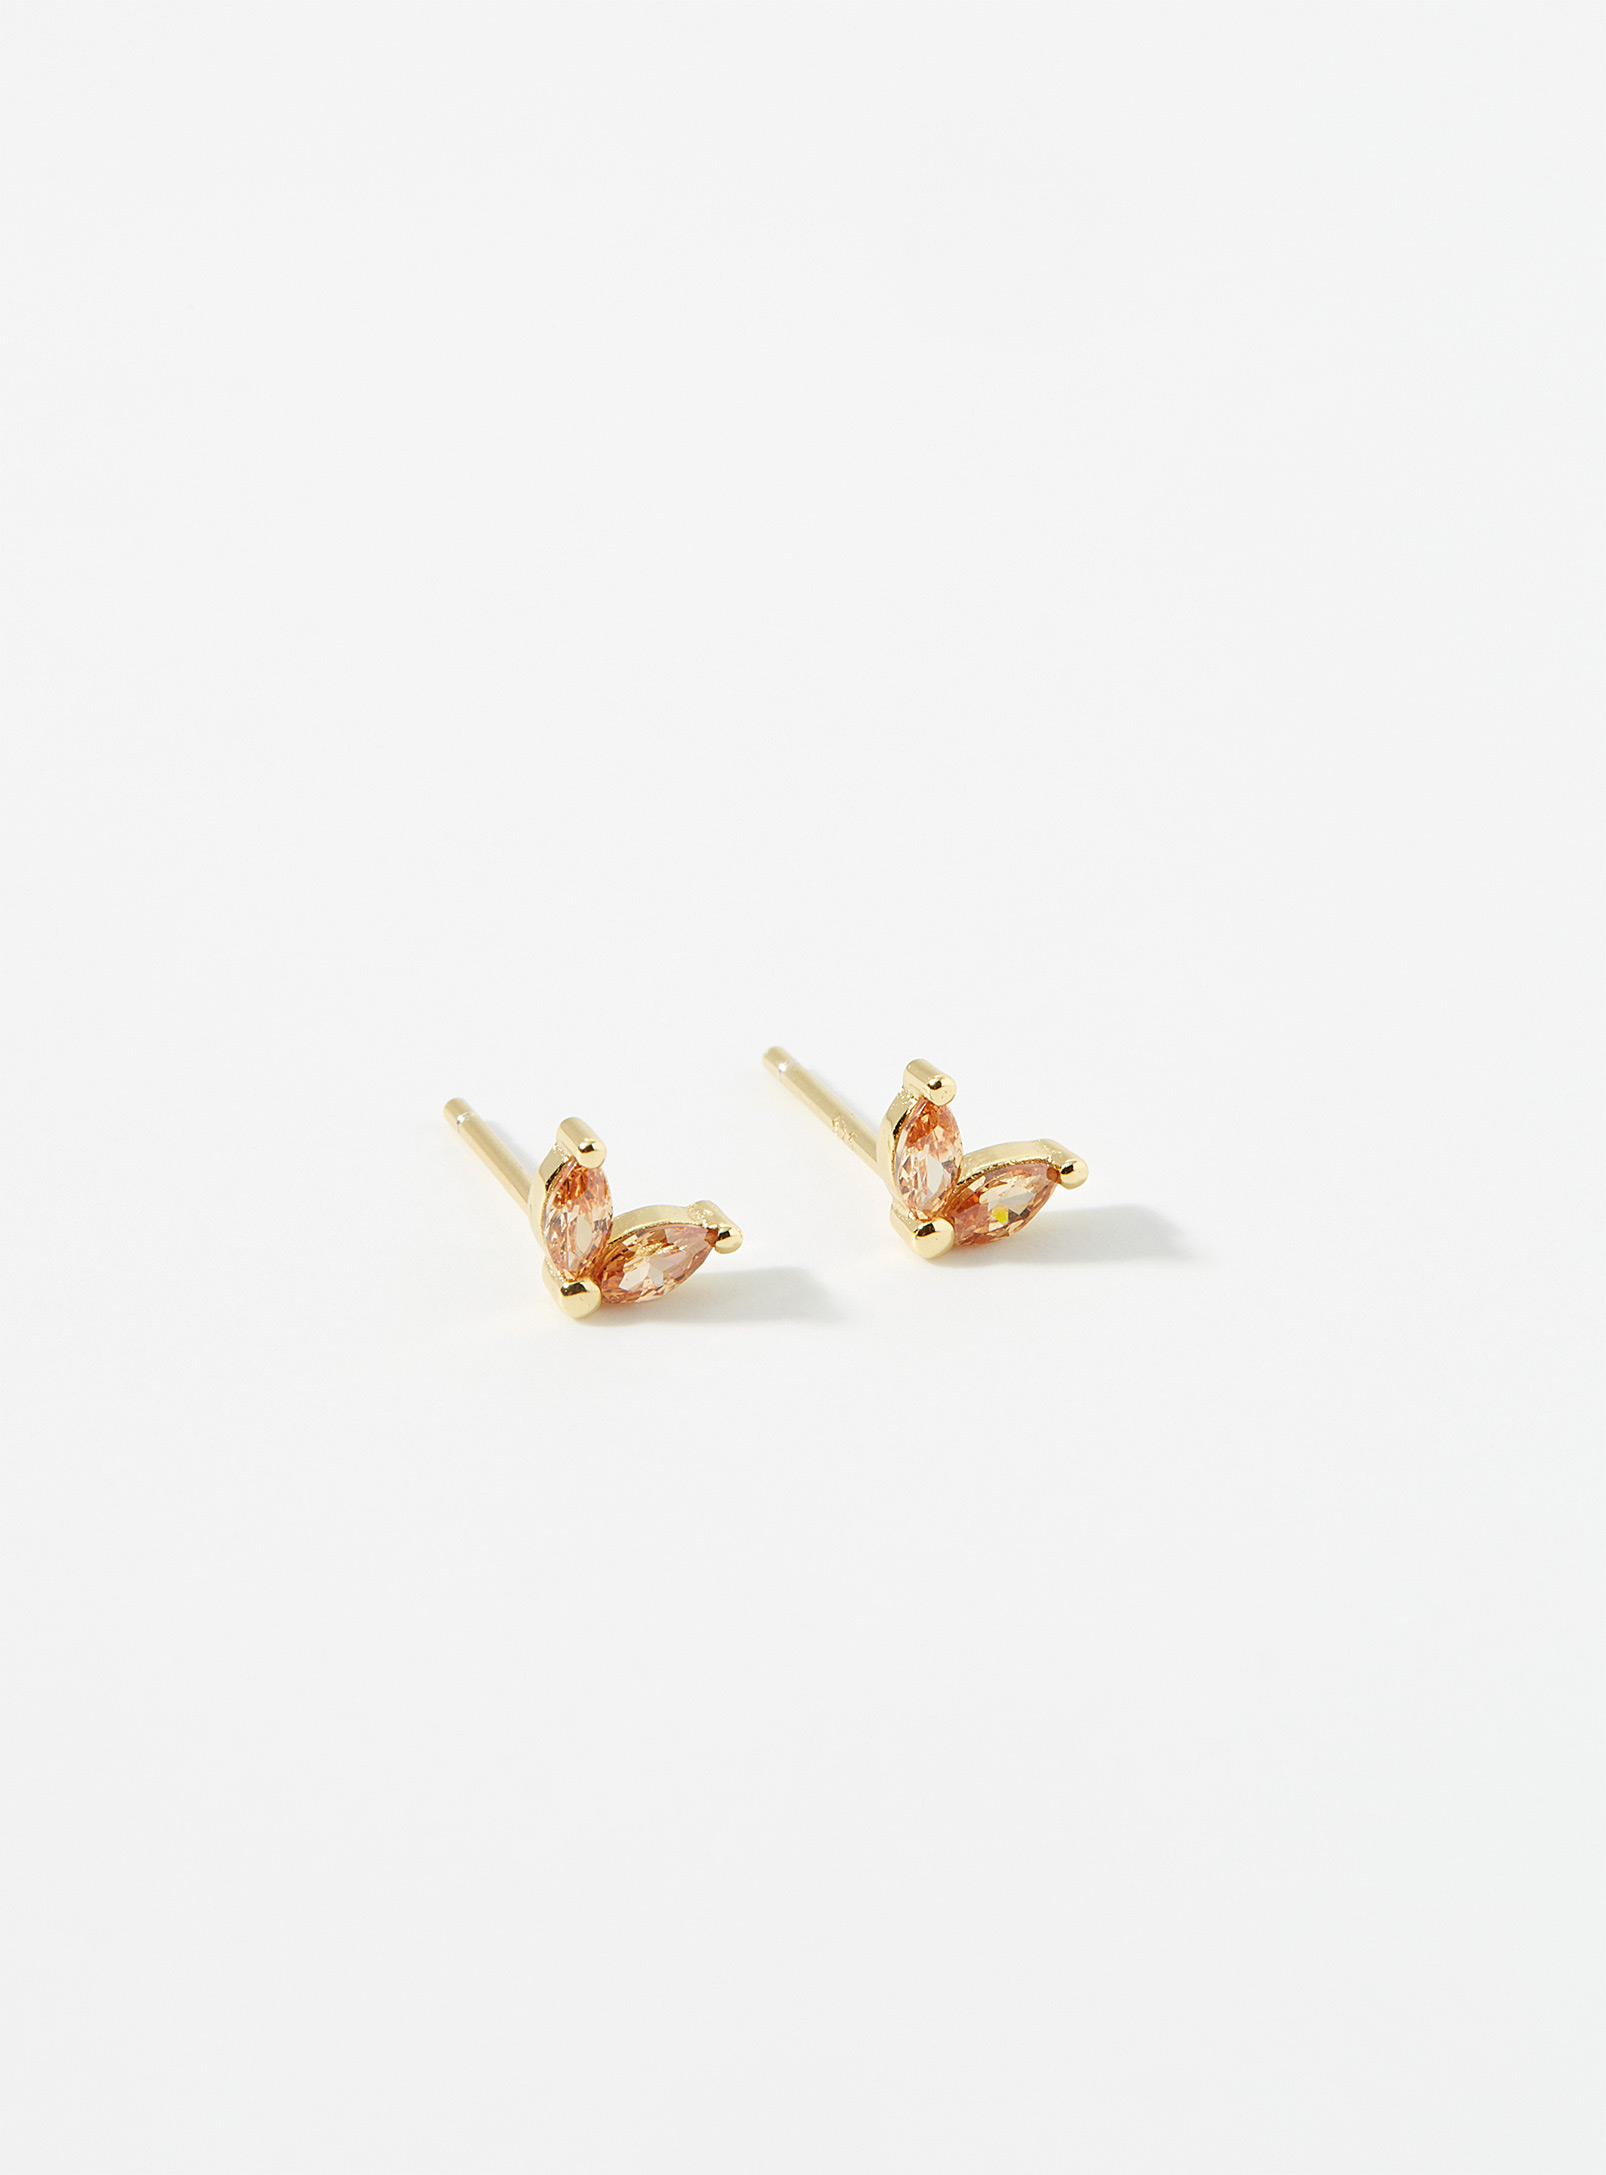 Midi34 - Women's Emma earrings